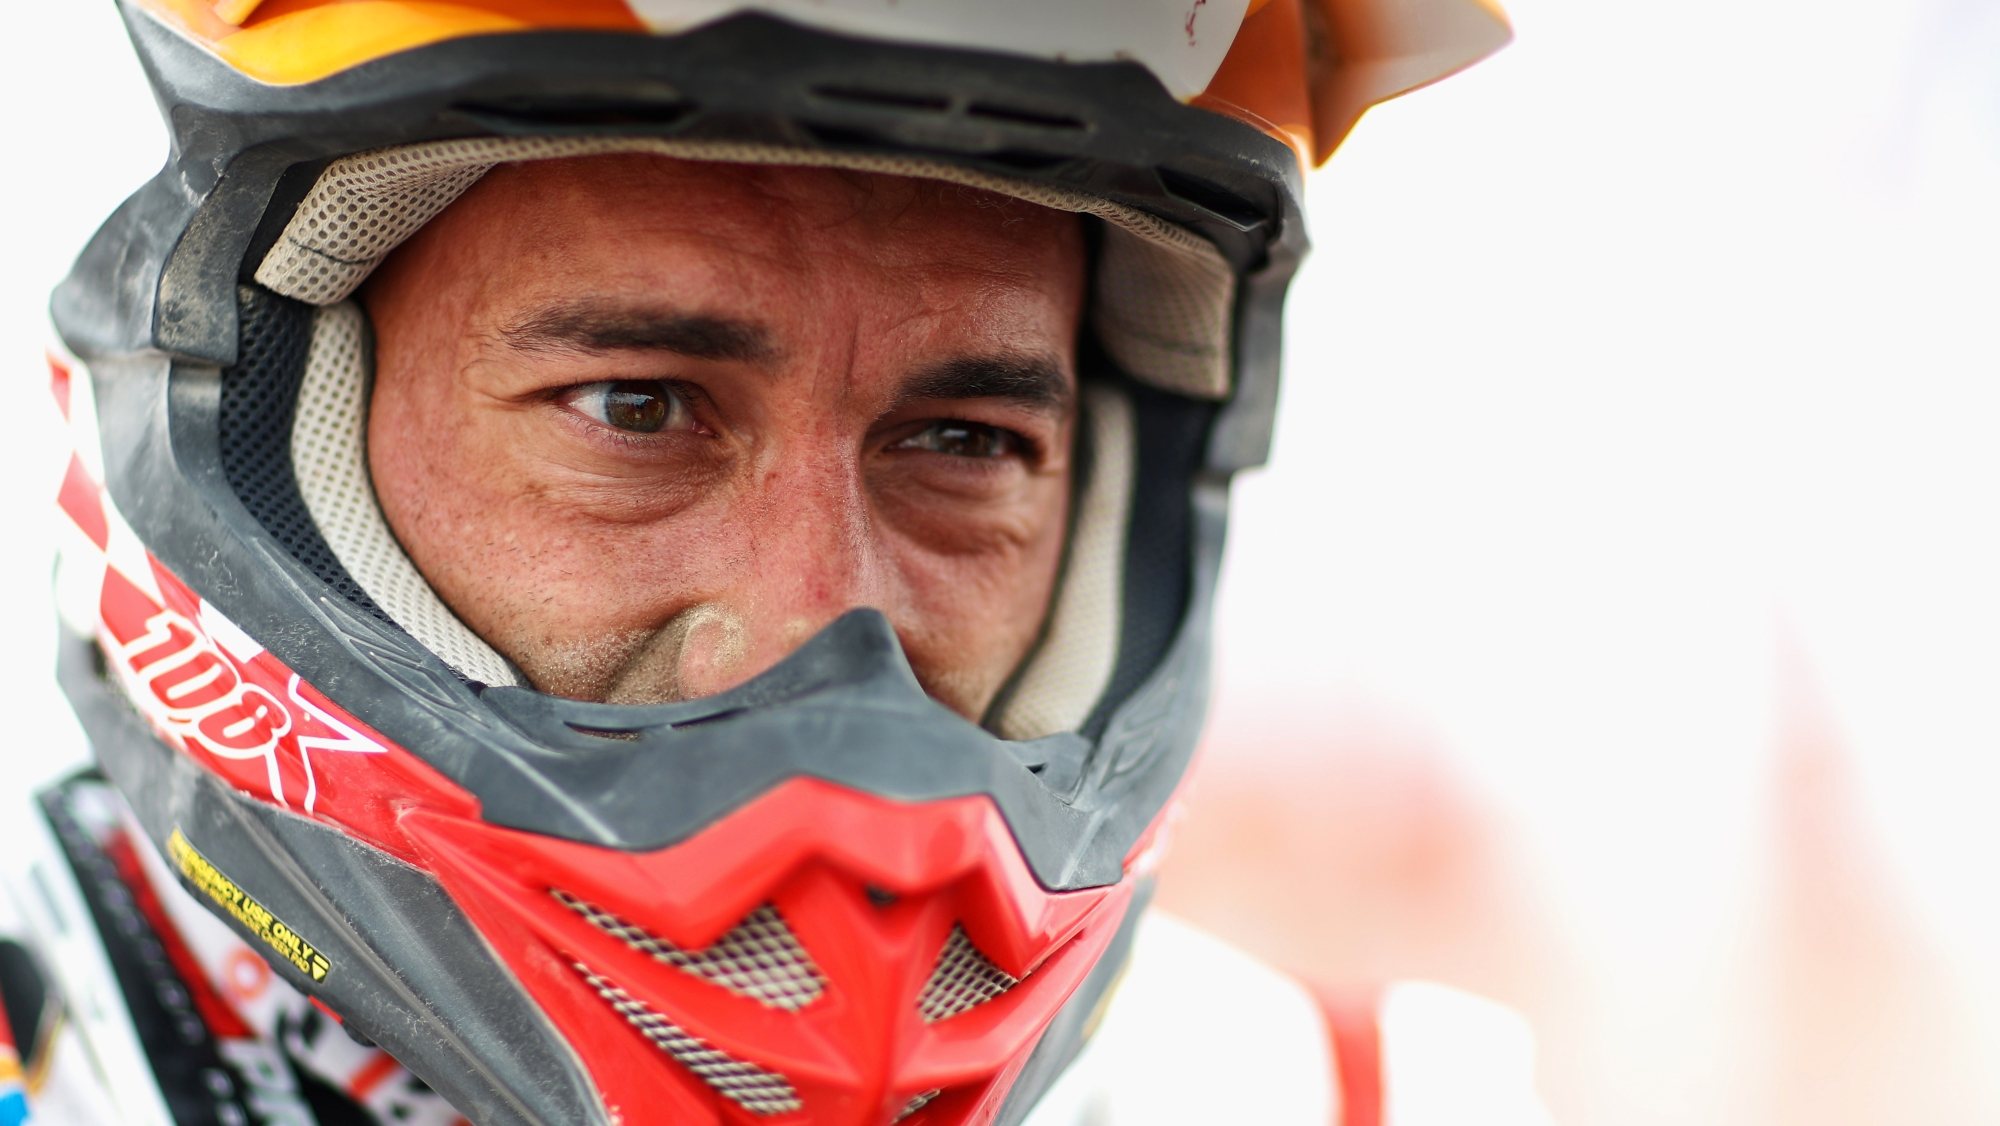 Joaquim Rodrigues tornou-se o nono piloto português a ganhar uma etapa na corrida mundial mais conhecida e reconhecida do todo-o-terreno